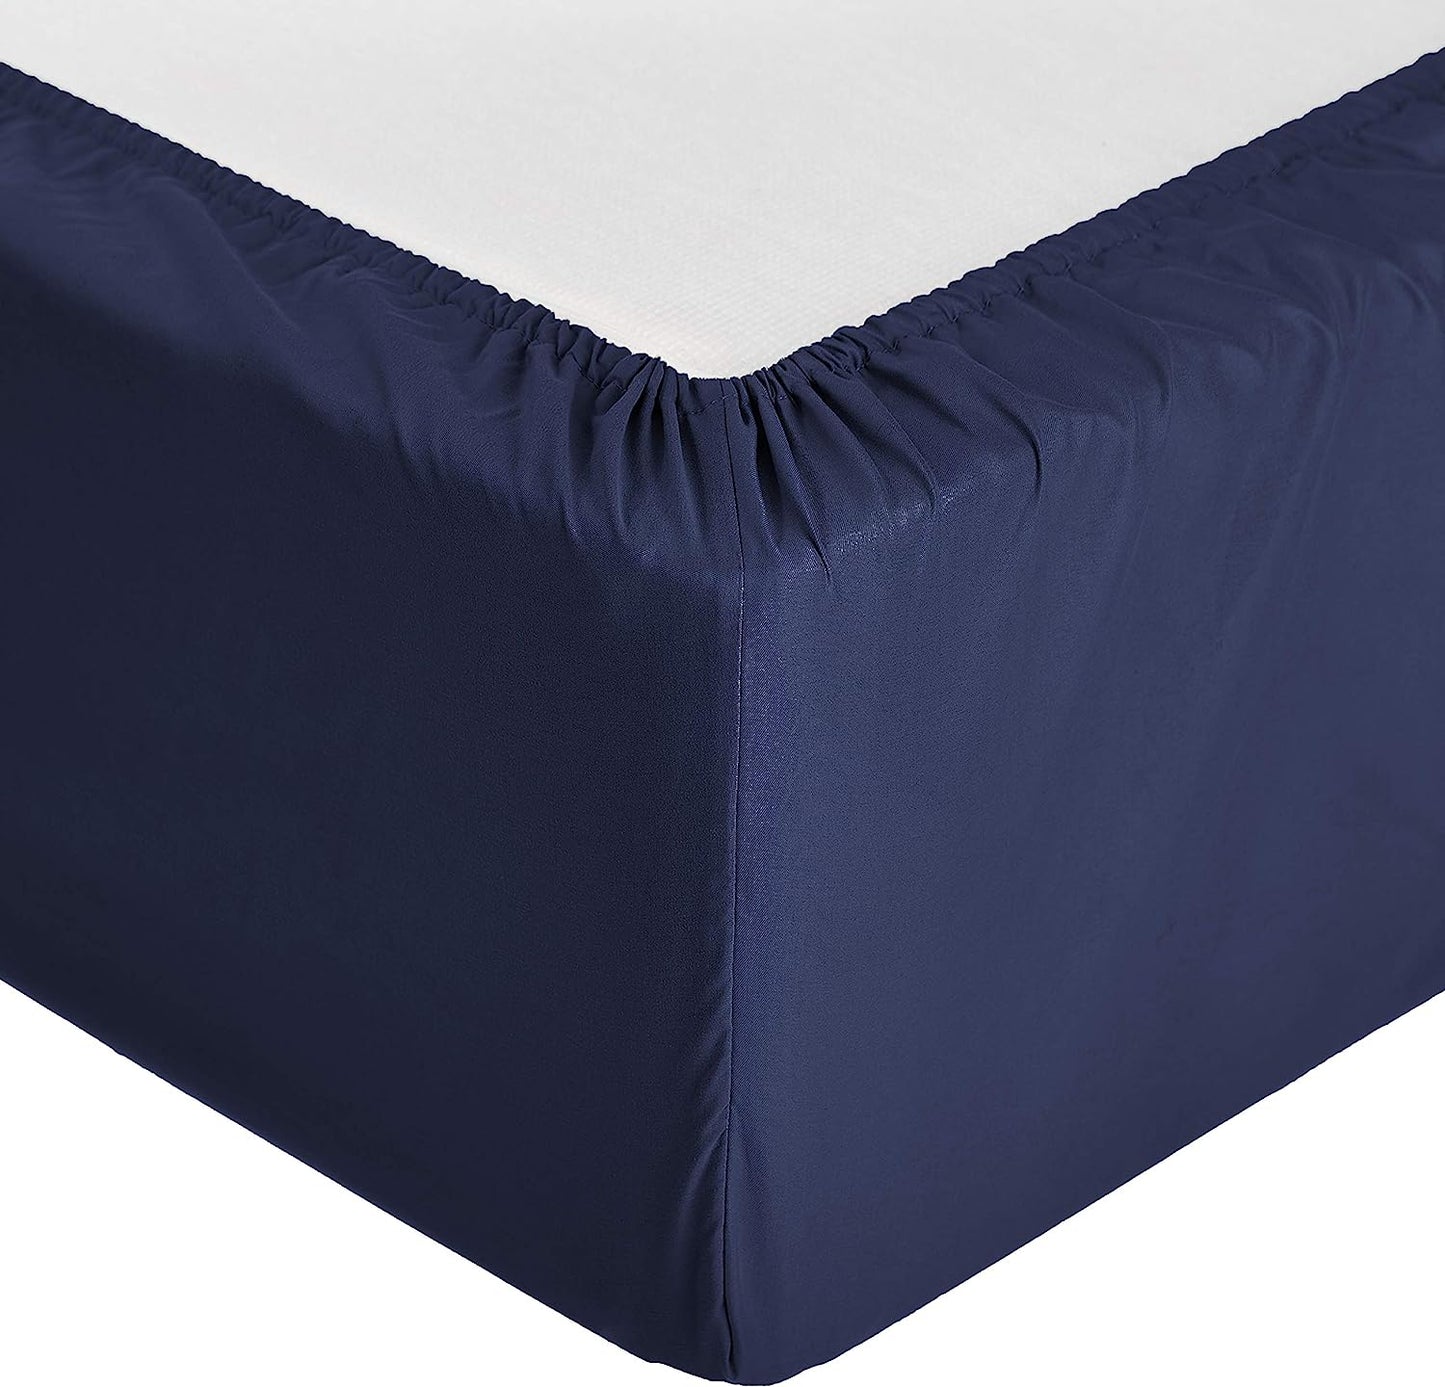 Basics bed cover, 160×200 cm, navy blue